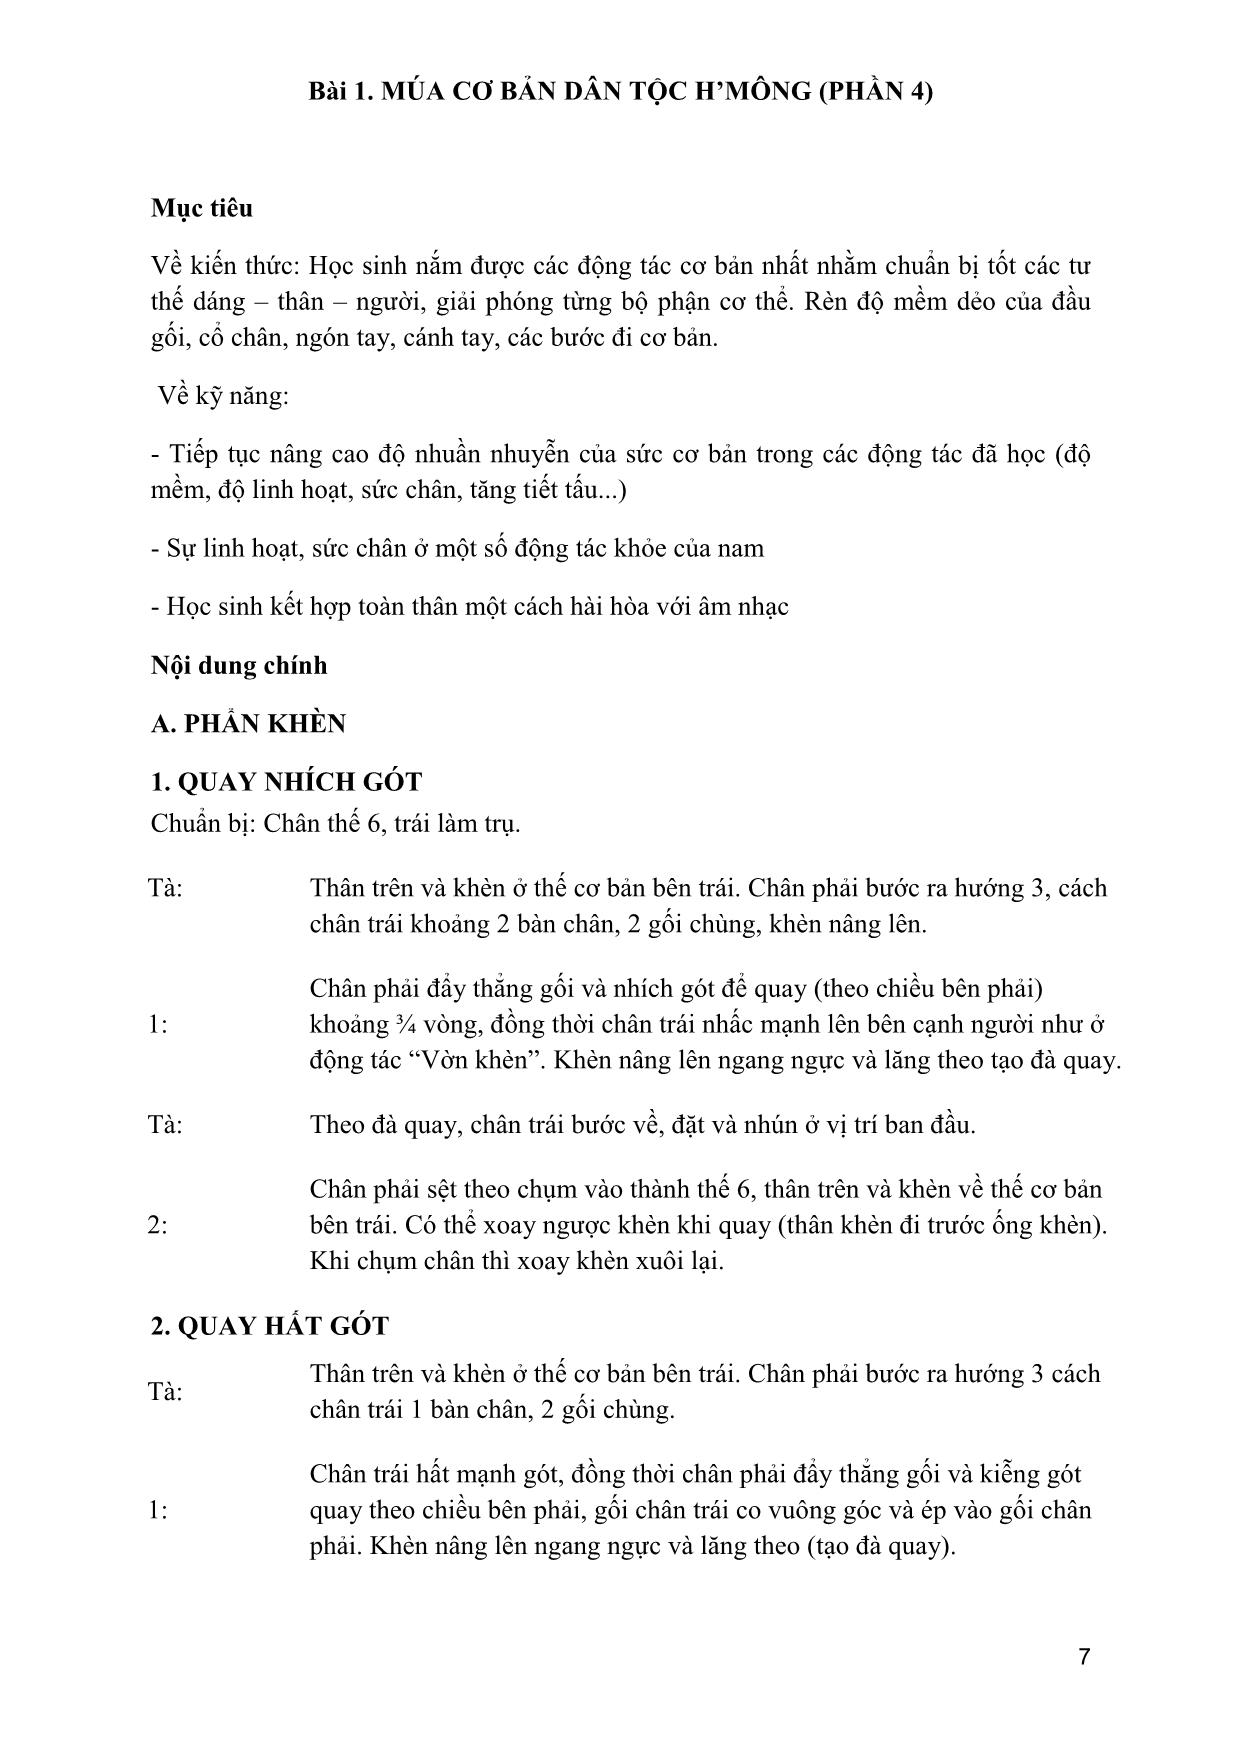 Giáo trình Múa dân gian dân tộc Việt Nam 4 trang 6